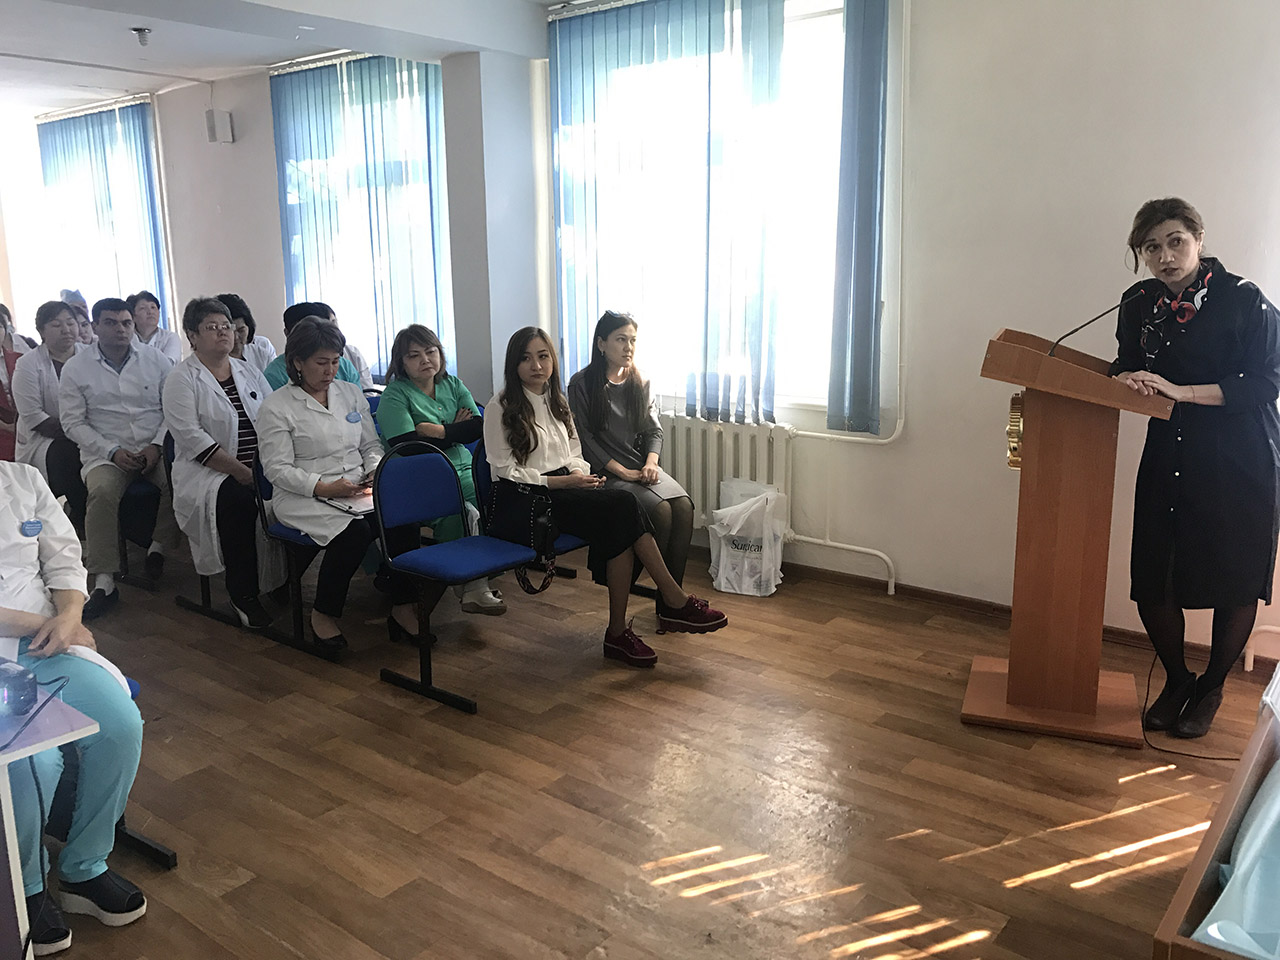 Мастер-класс прошел в г. Тараз для «Жамбылского областного онкологического диспансера».